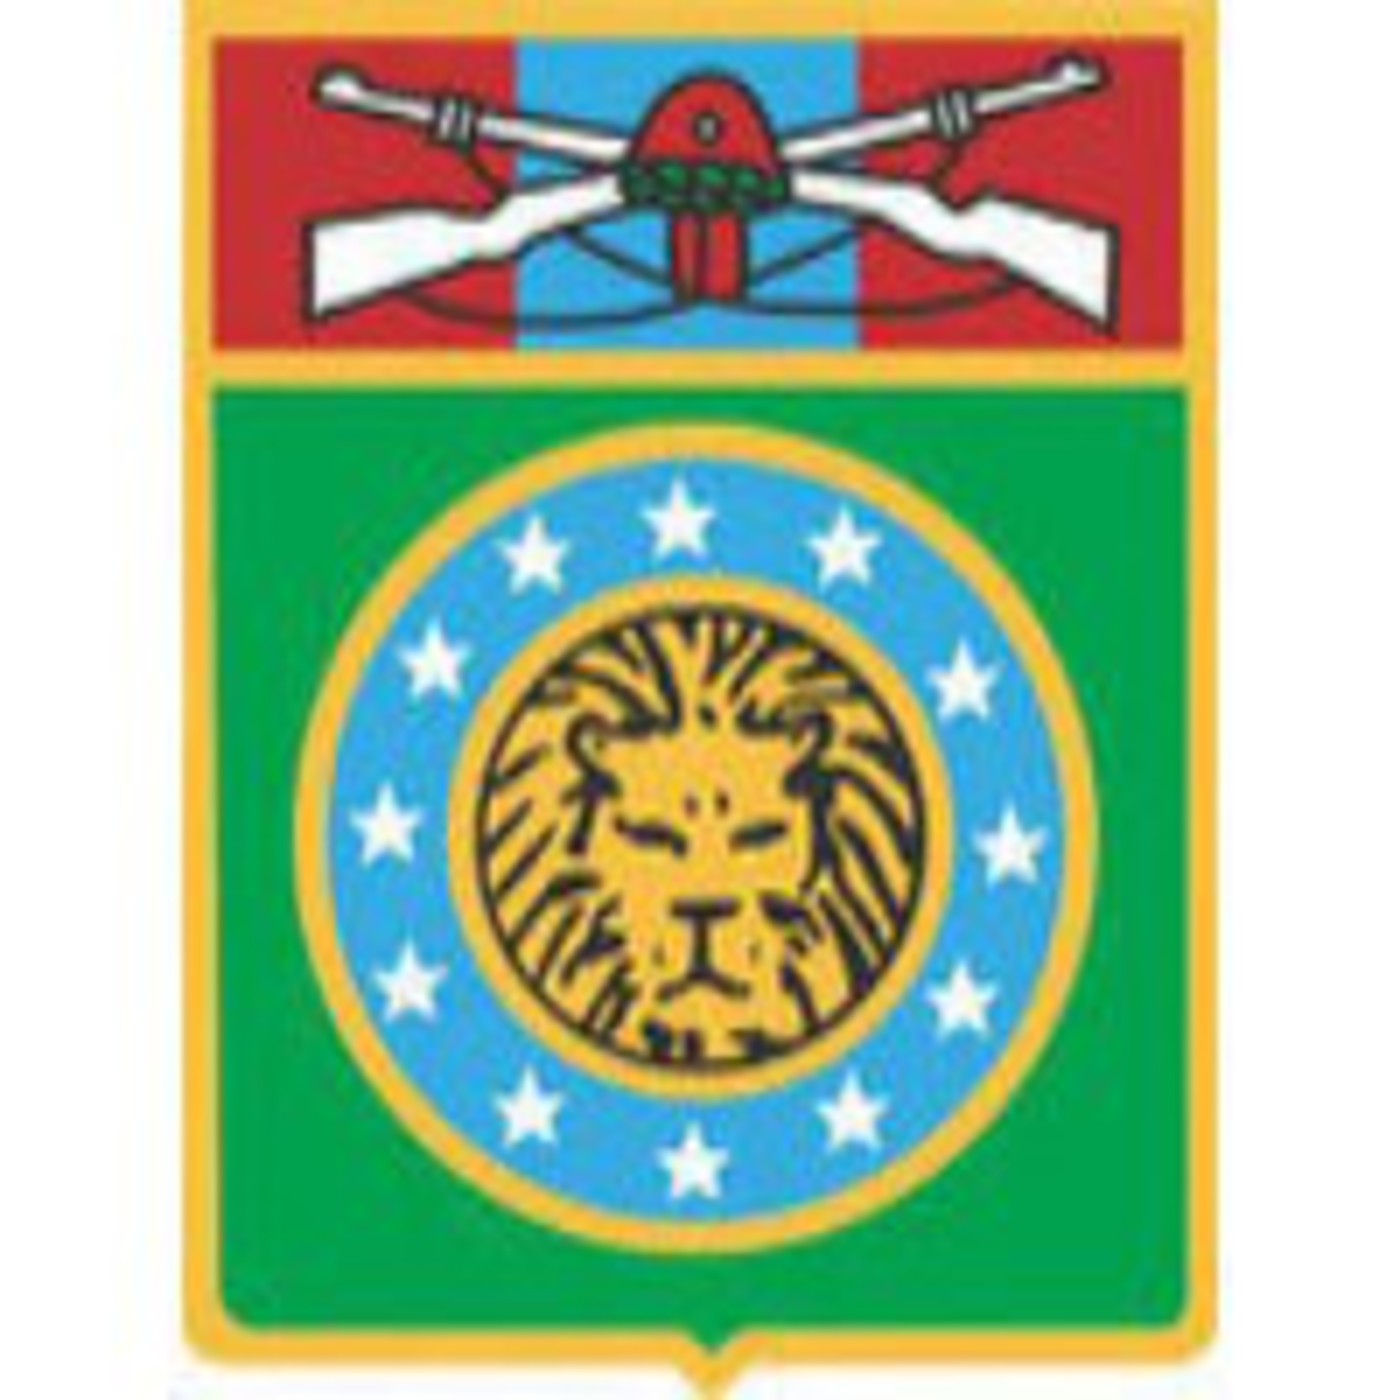 Canal Reservistas Exército Brasileiro